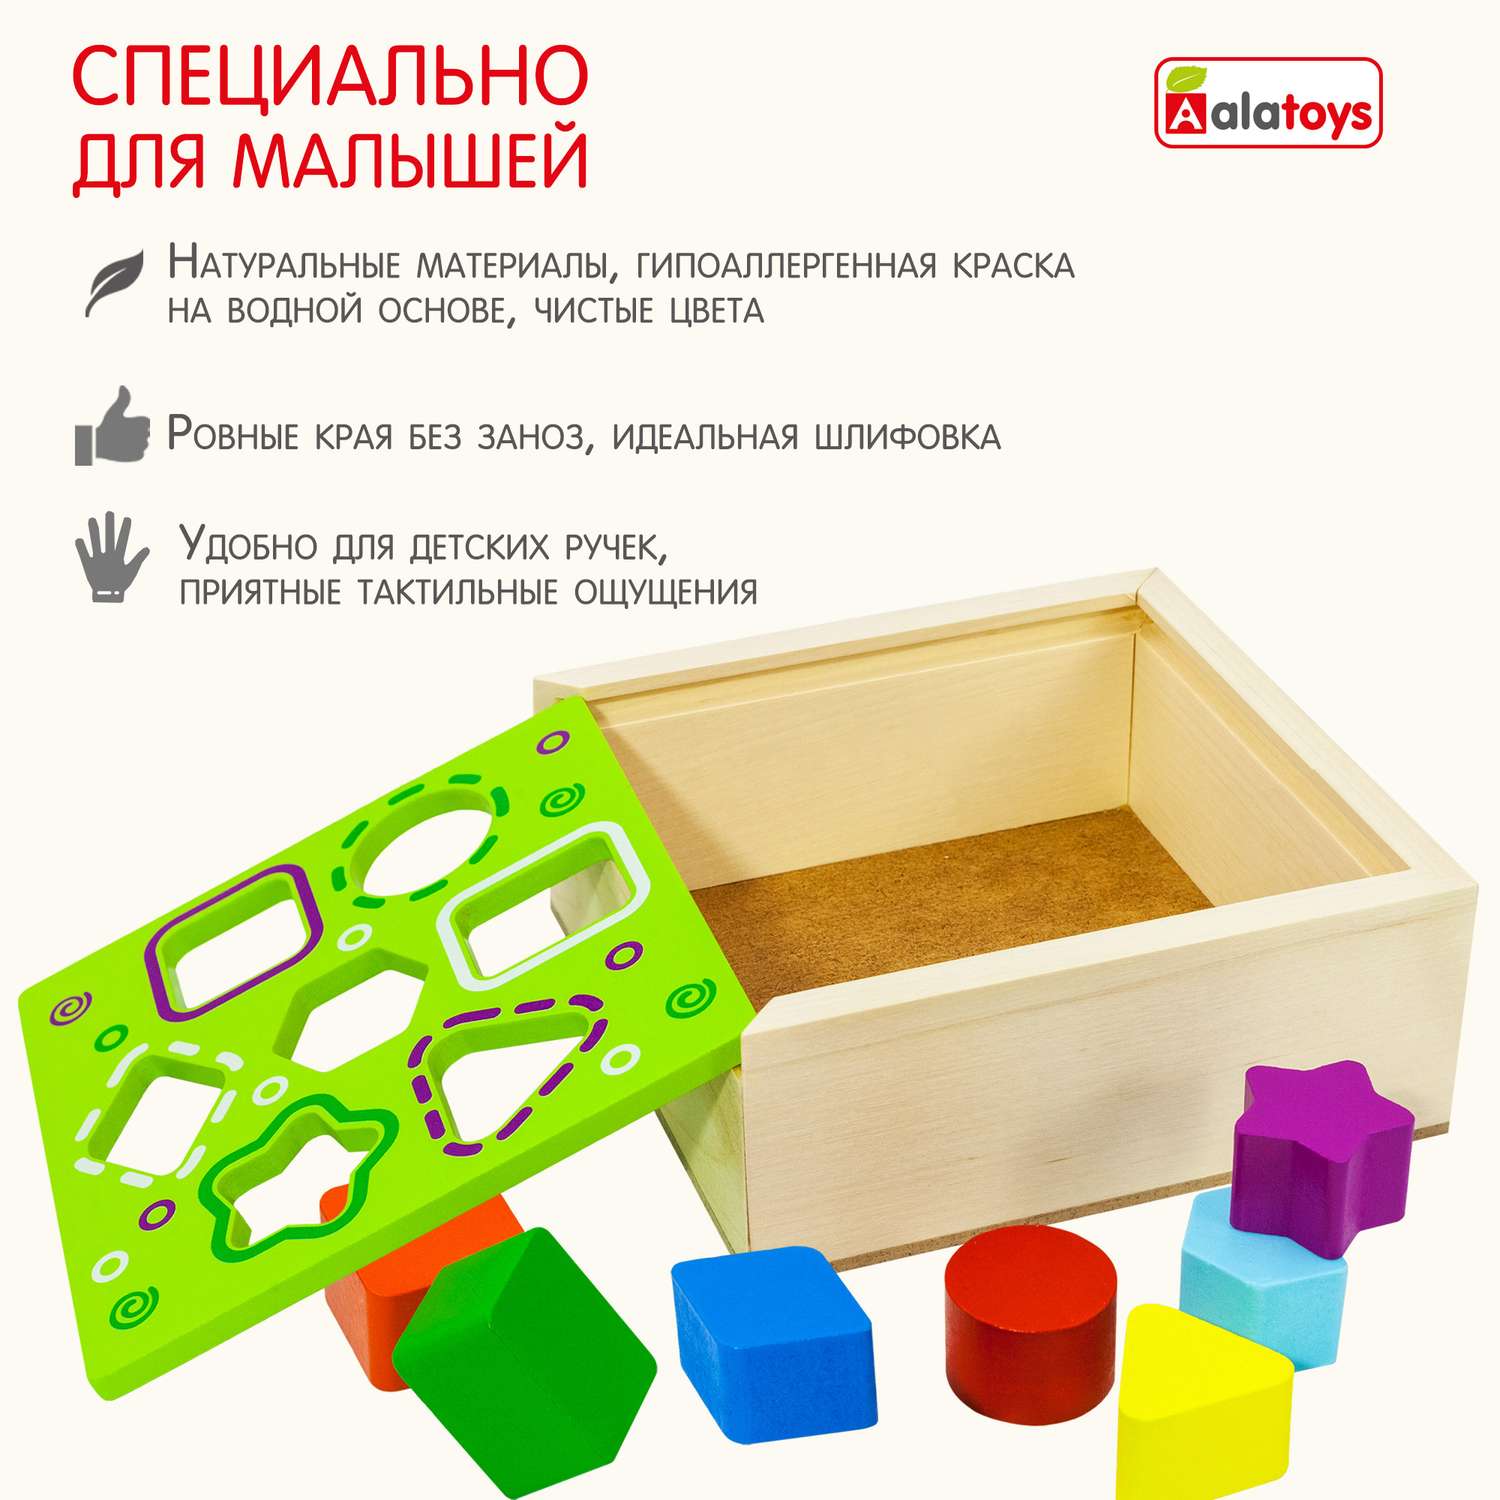 Сортер ящик 7 фигур Alatoys развивающая деревянная игрушка Монтессори + гайд с играми - фото 7